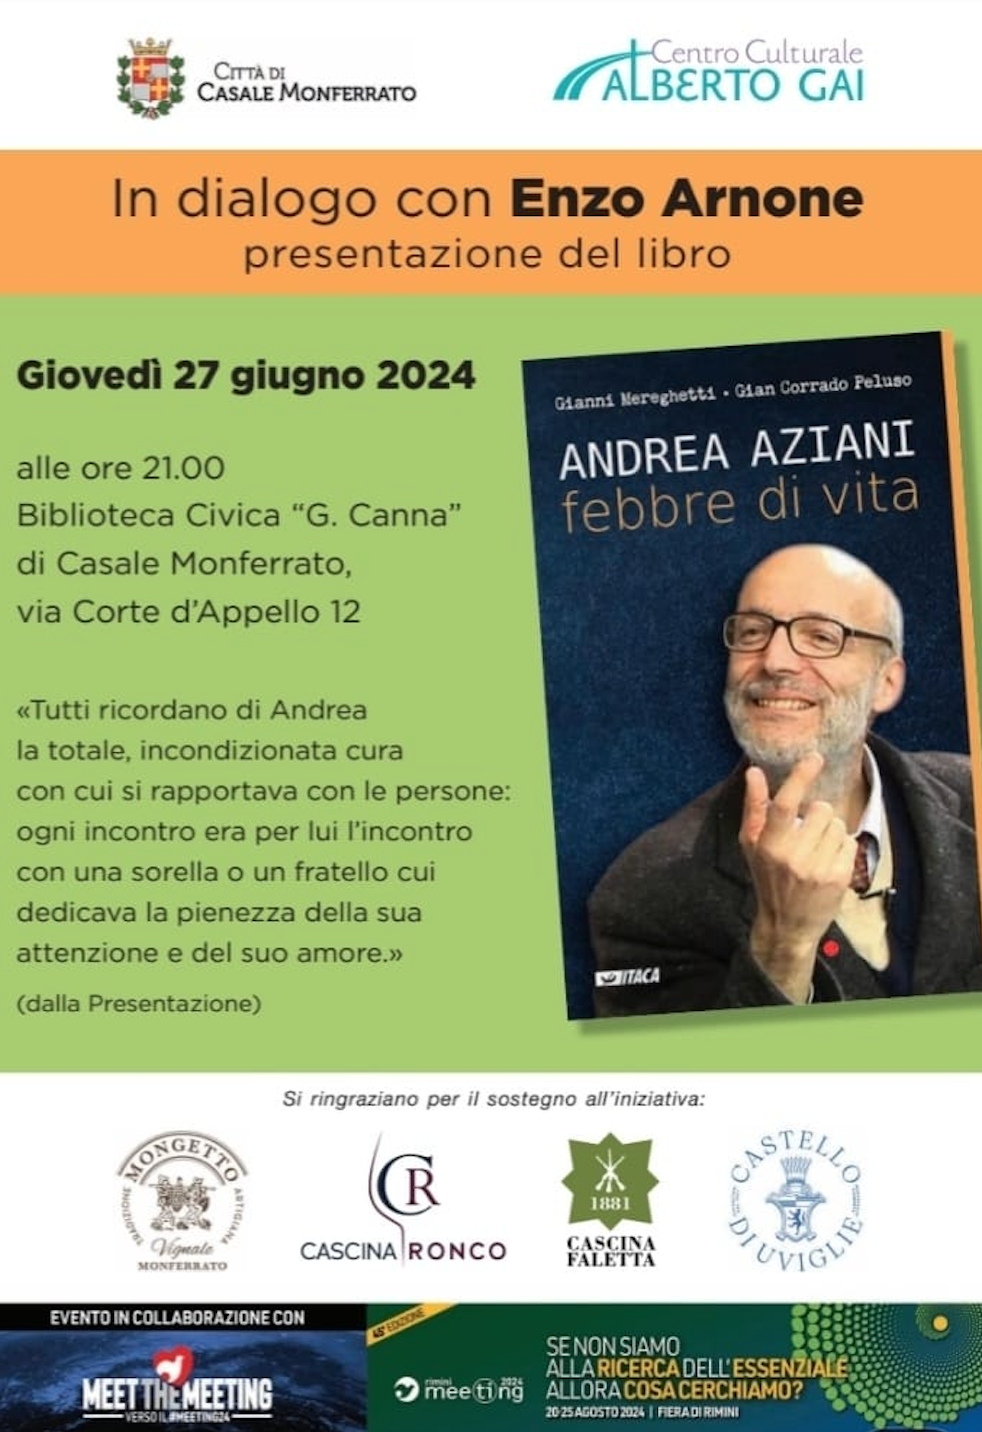 Featured image for “Casale Monferrato: Andrea Aziani, febbre di vita”